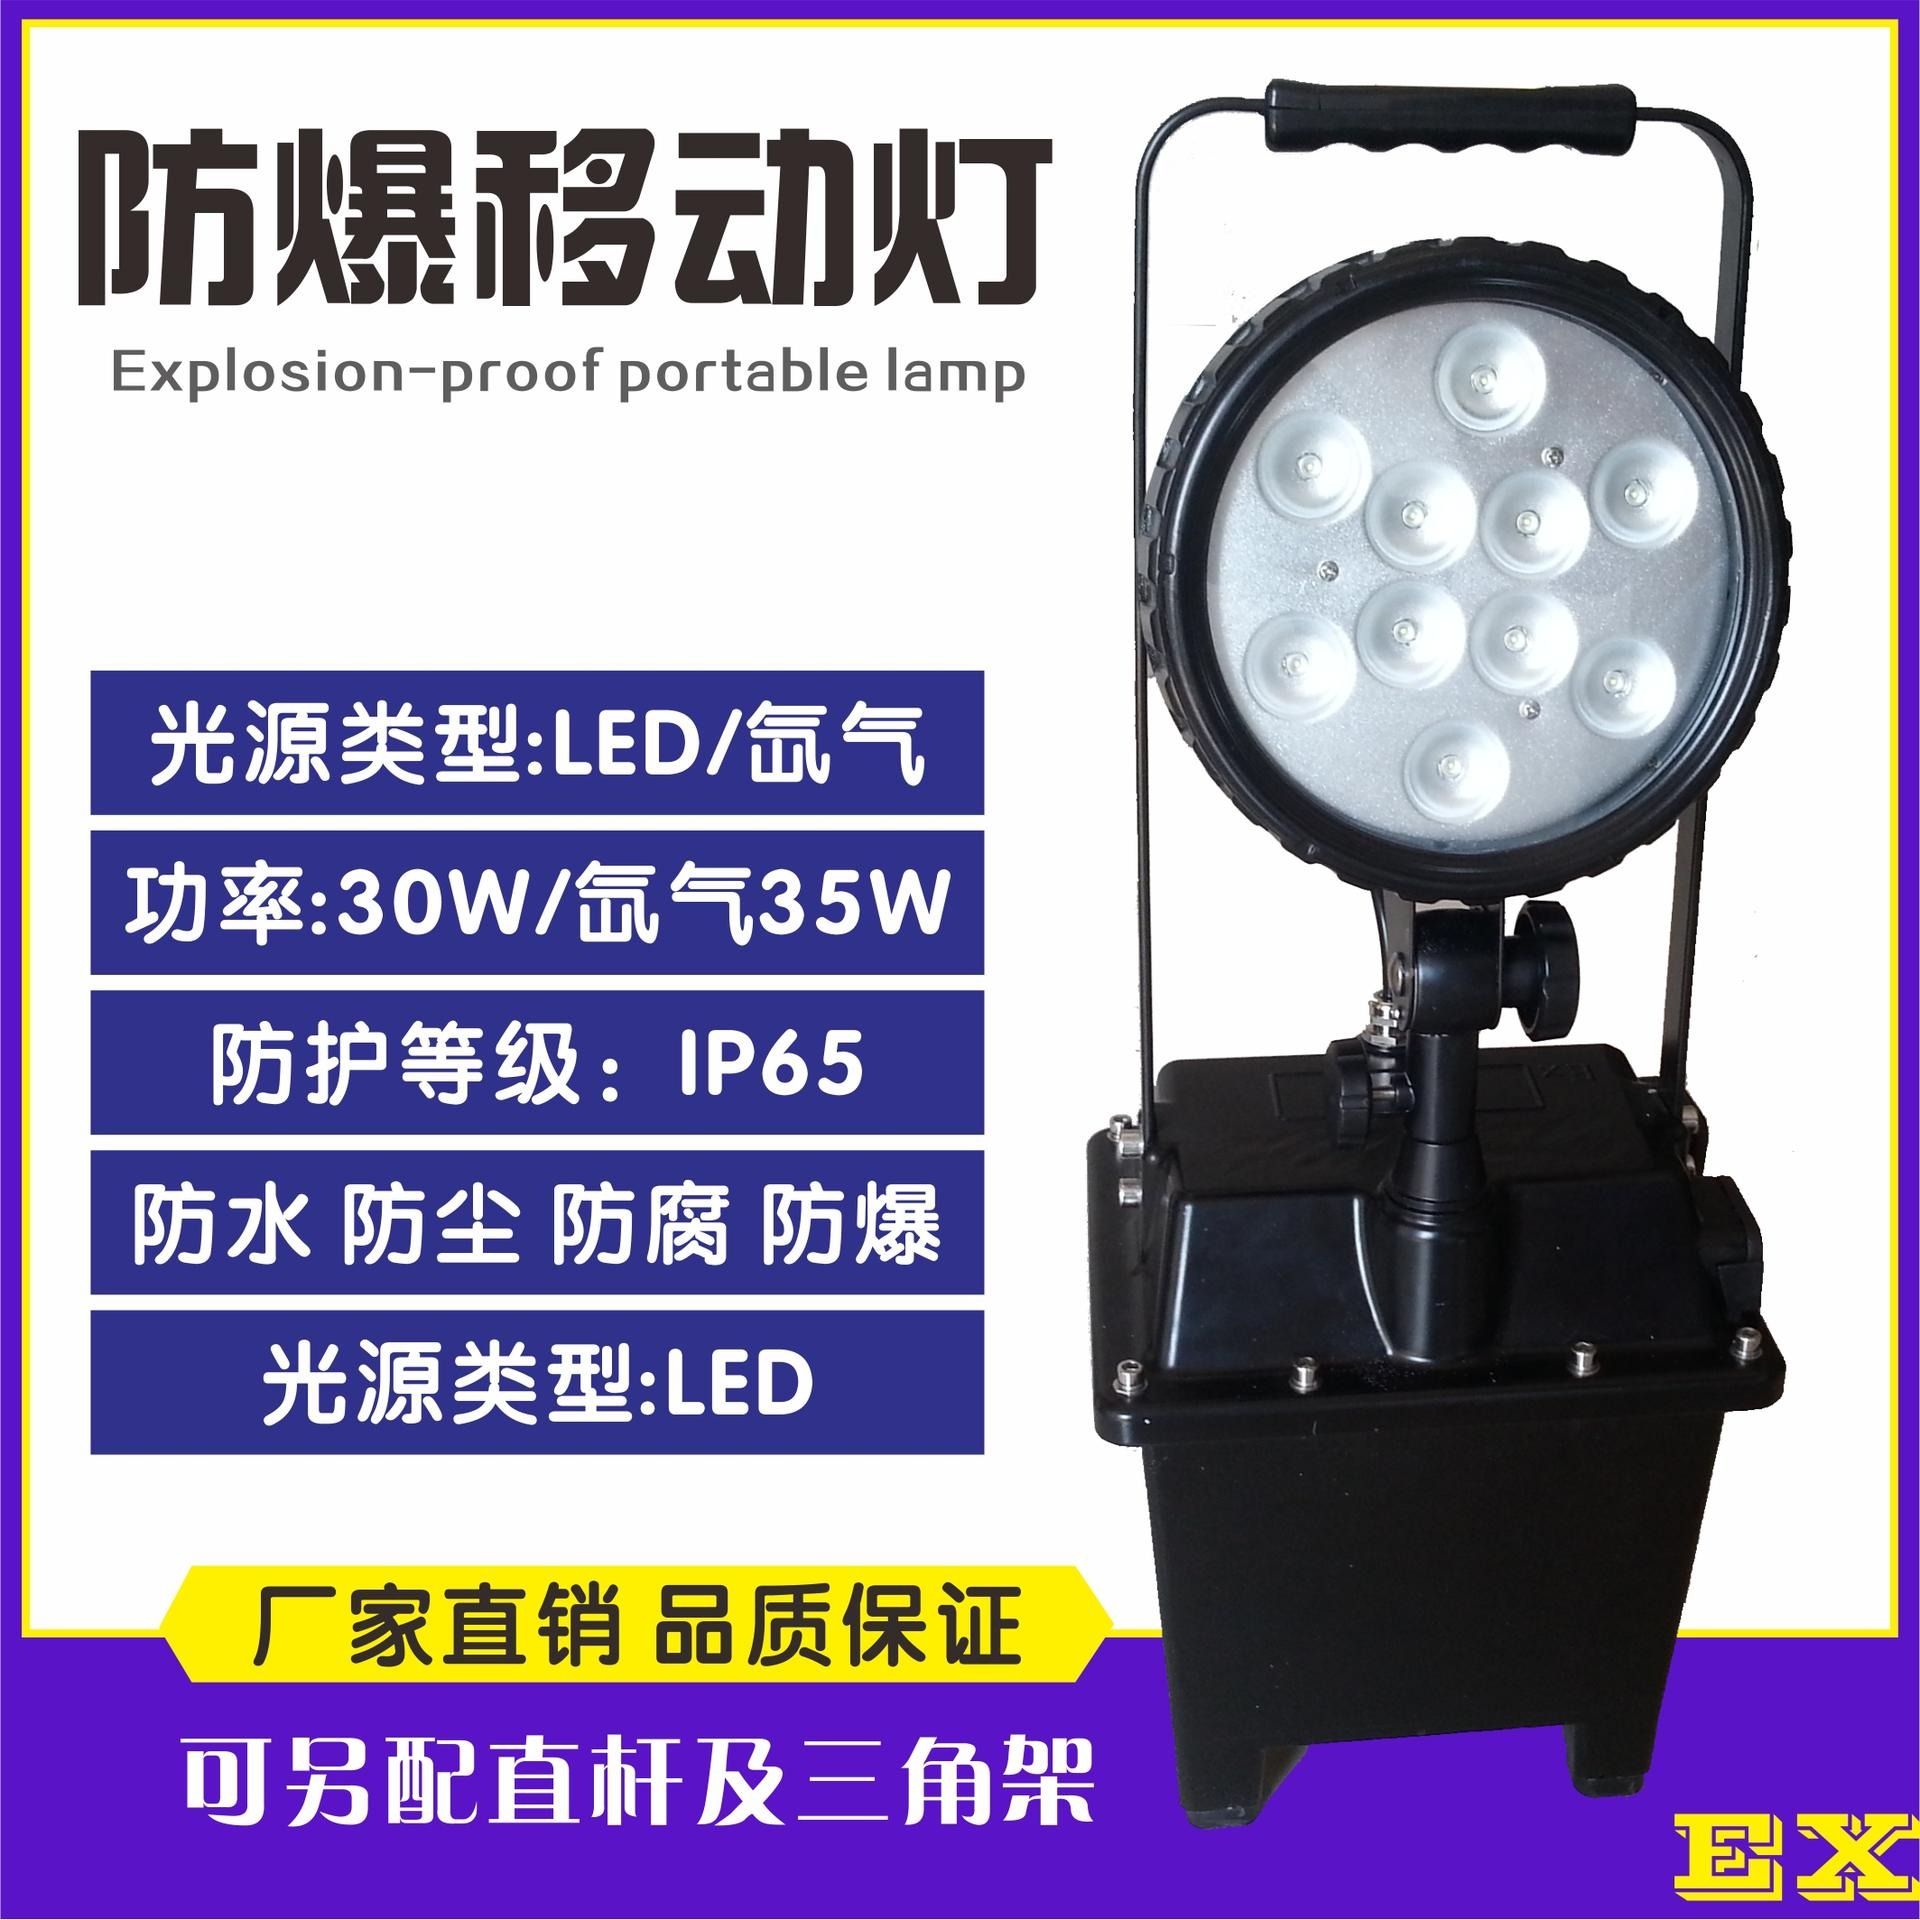 洲创电气bw3210防爆移动照明灯 强光大范围搜救灯 大范围移动泛光照明灯 石油石化LED工作灯